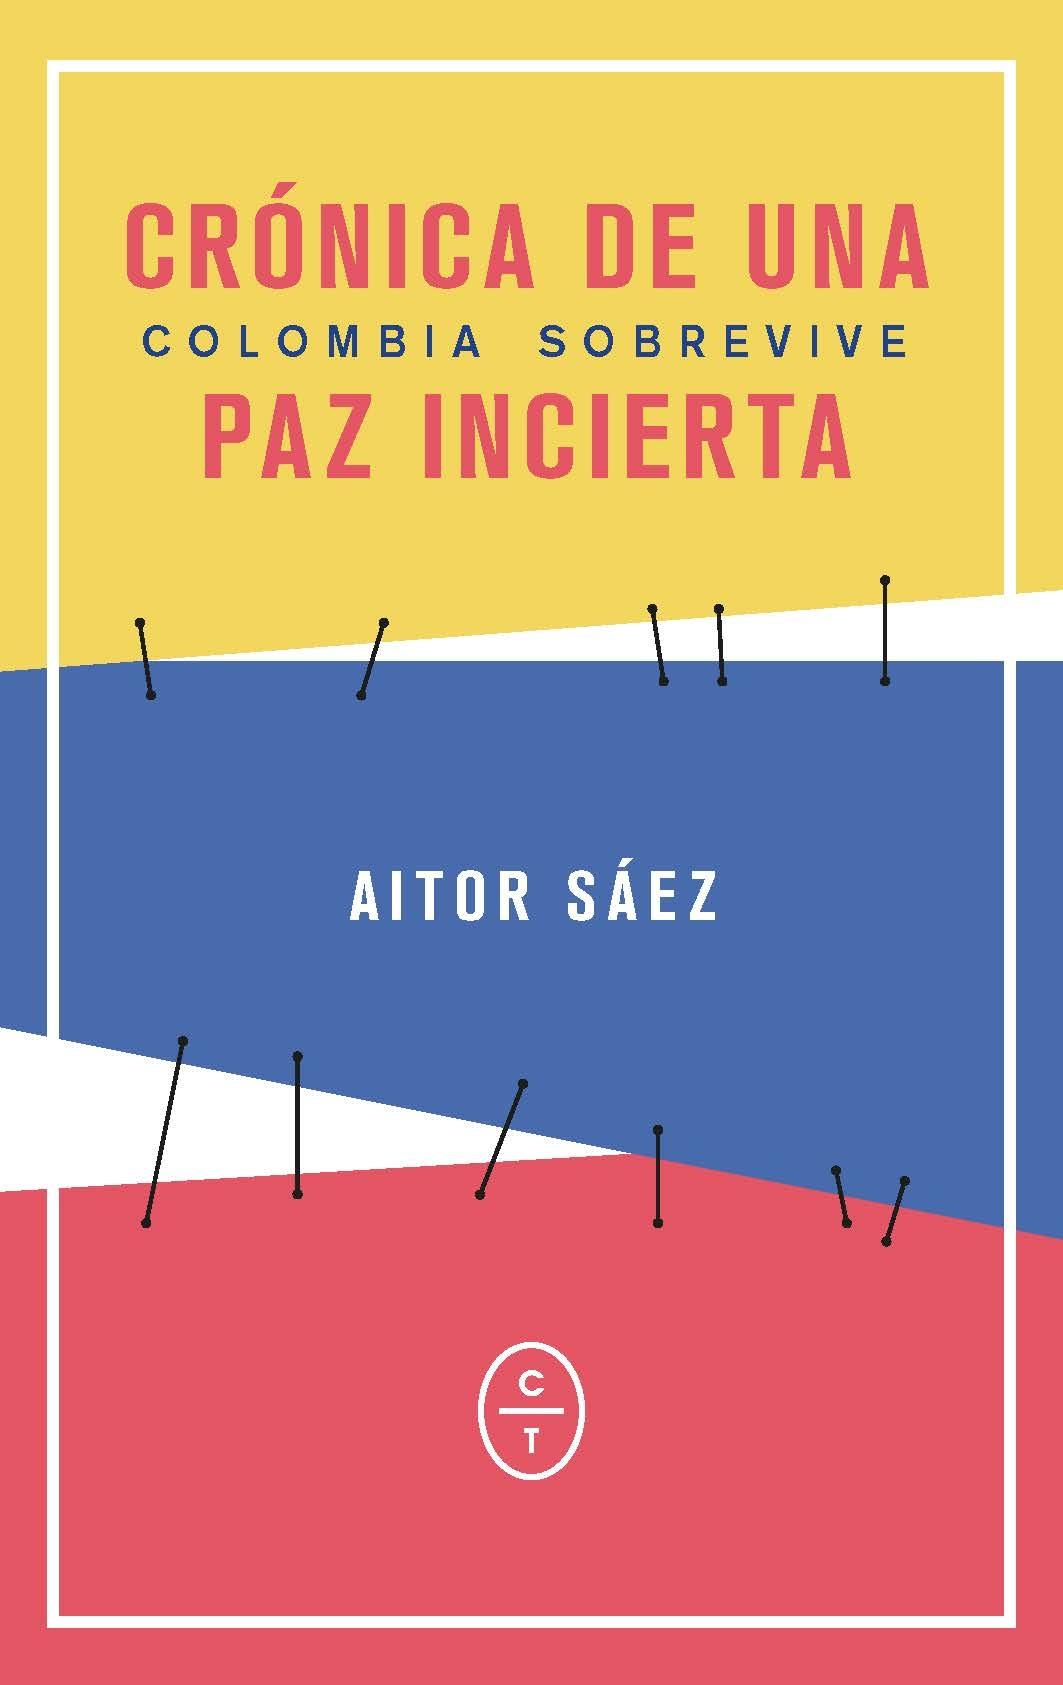 Colombia Sobrevive "Cronica de una Paz Incierta". 